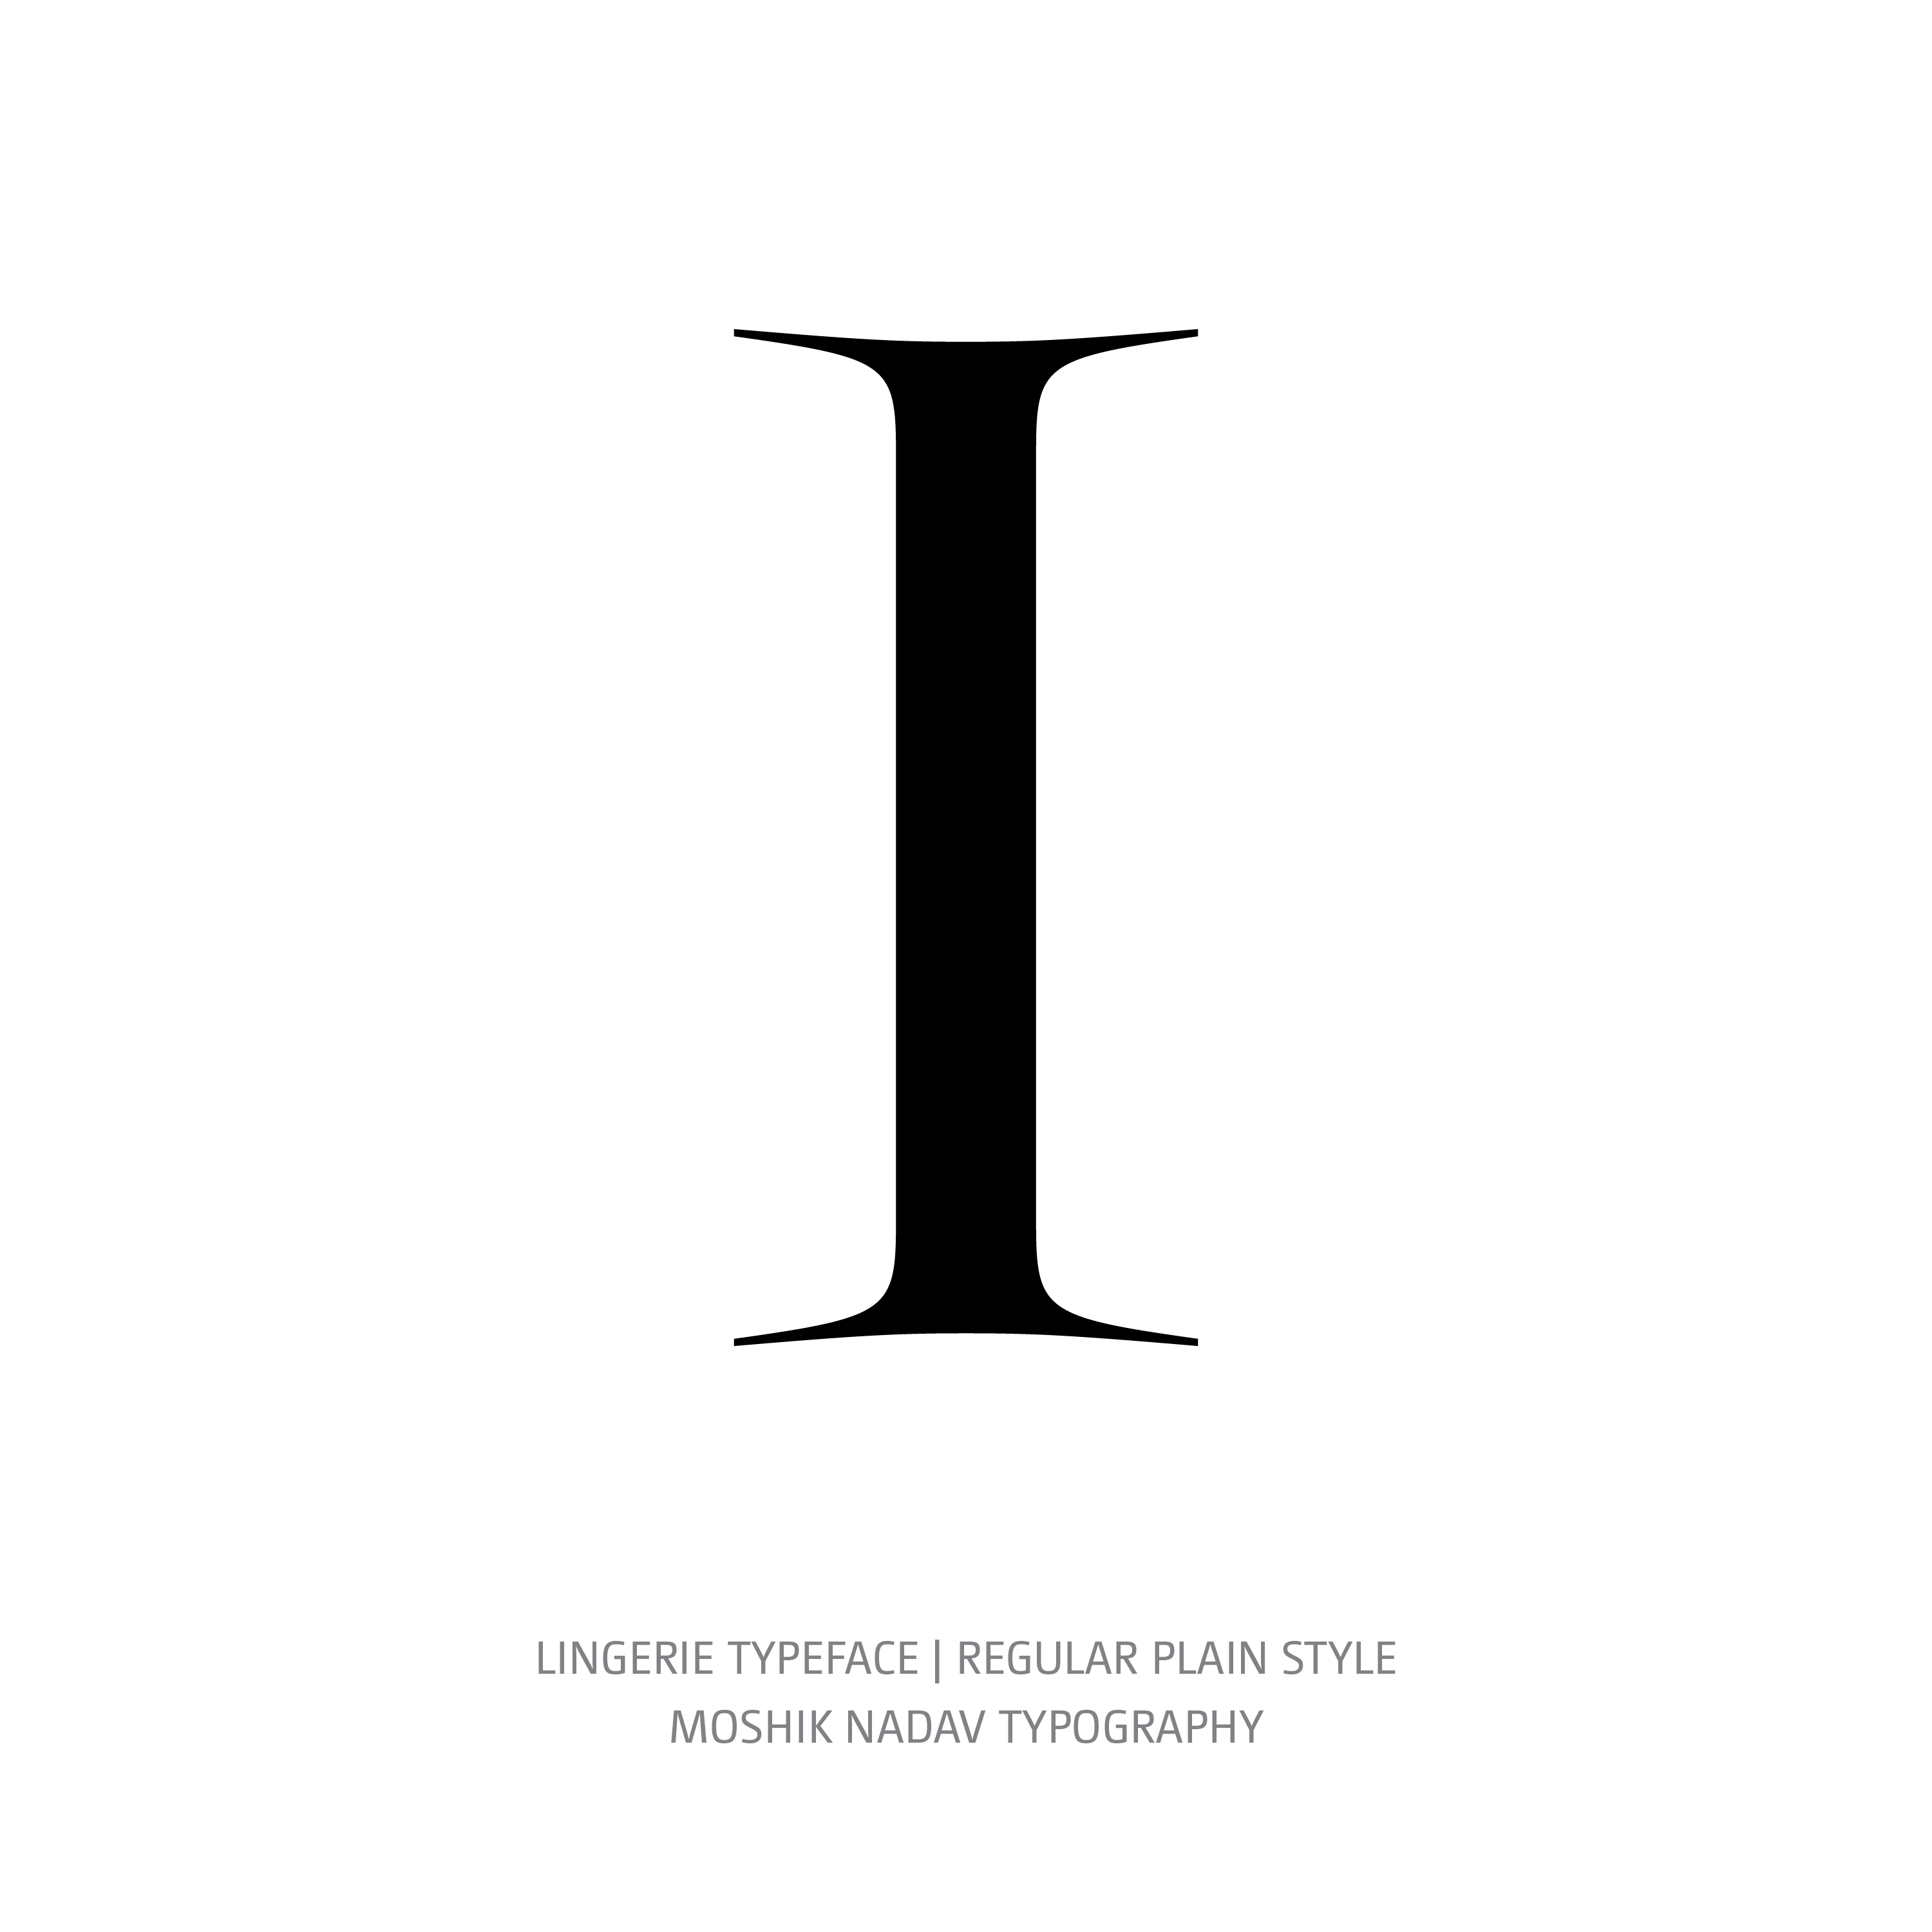 Lingerie Typeface Regular Plain I